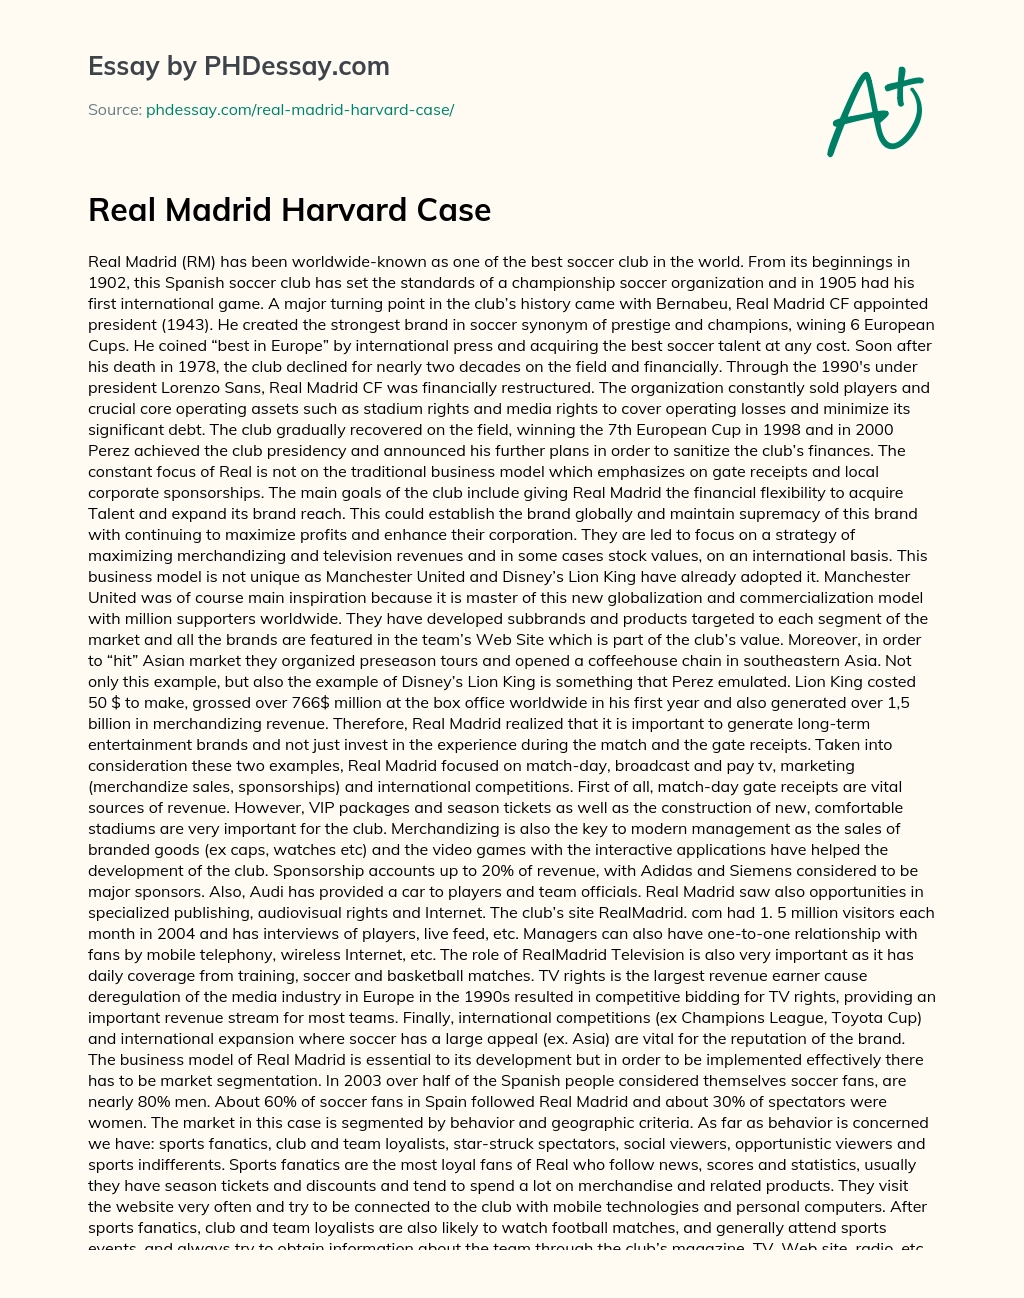 Real Madrid Harvard Case essay